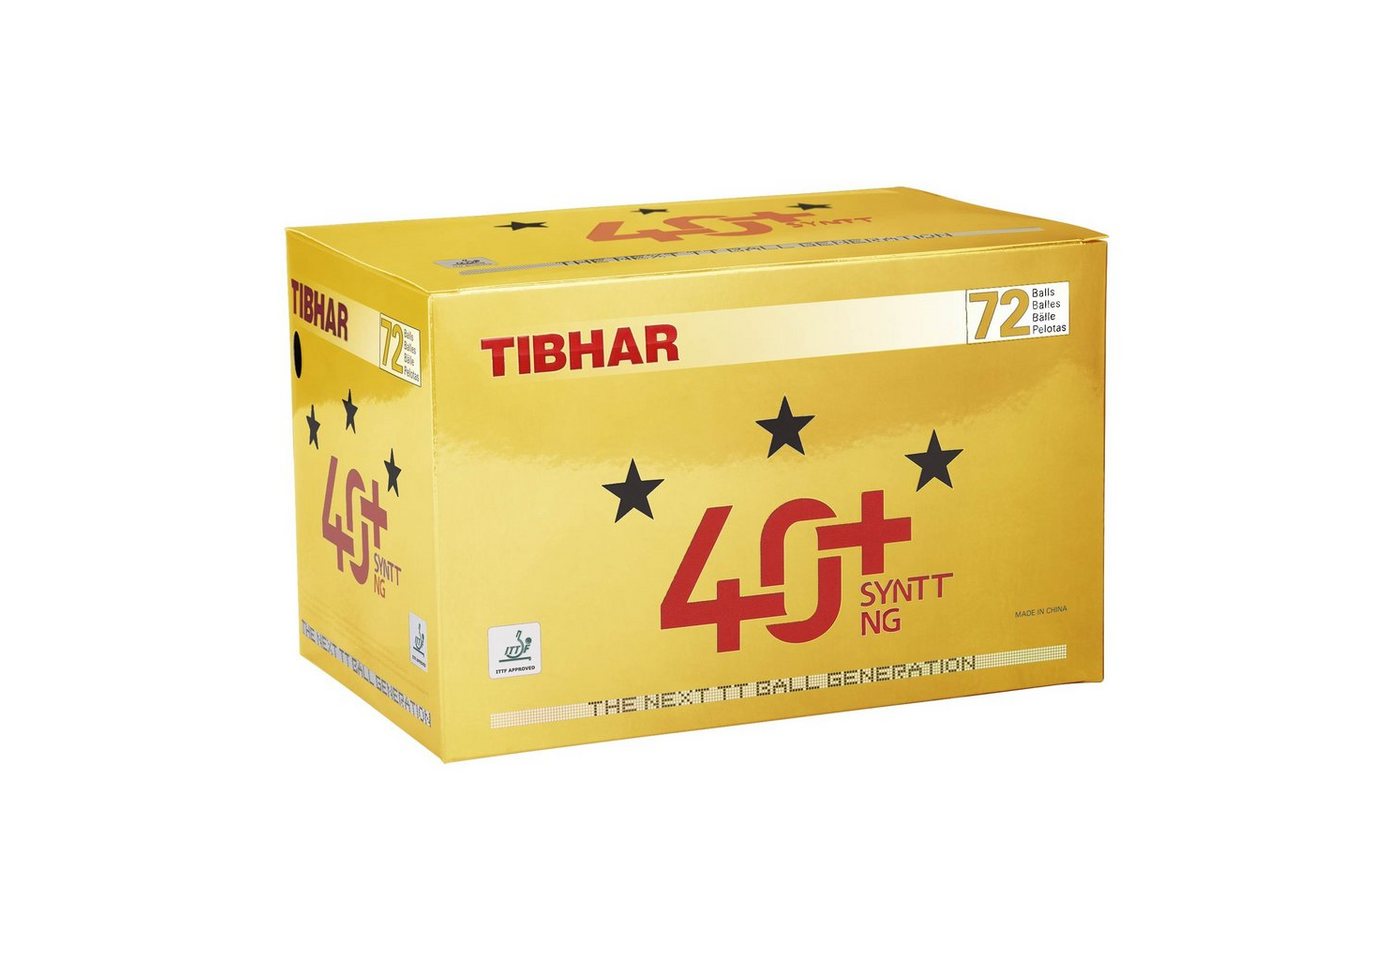 Tibhar Tischtennisball Tibhar Ball *** 40+ SYNTT NG 72er von Tibhar